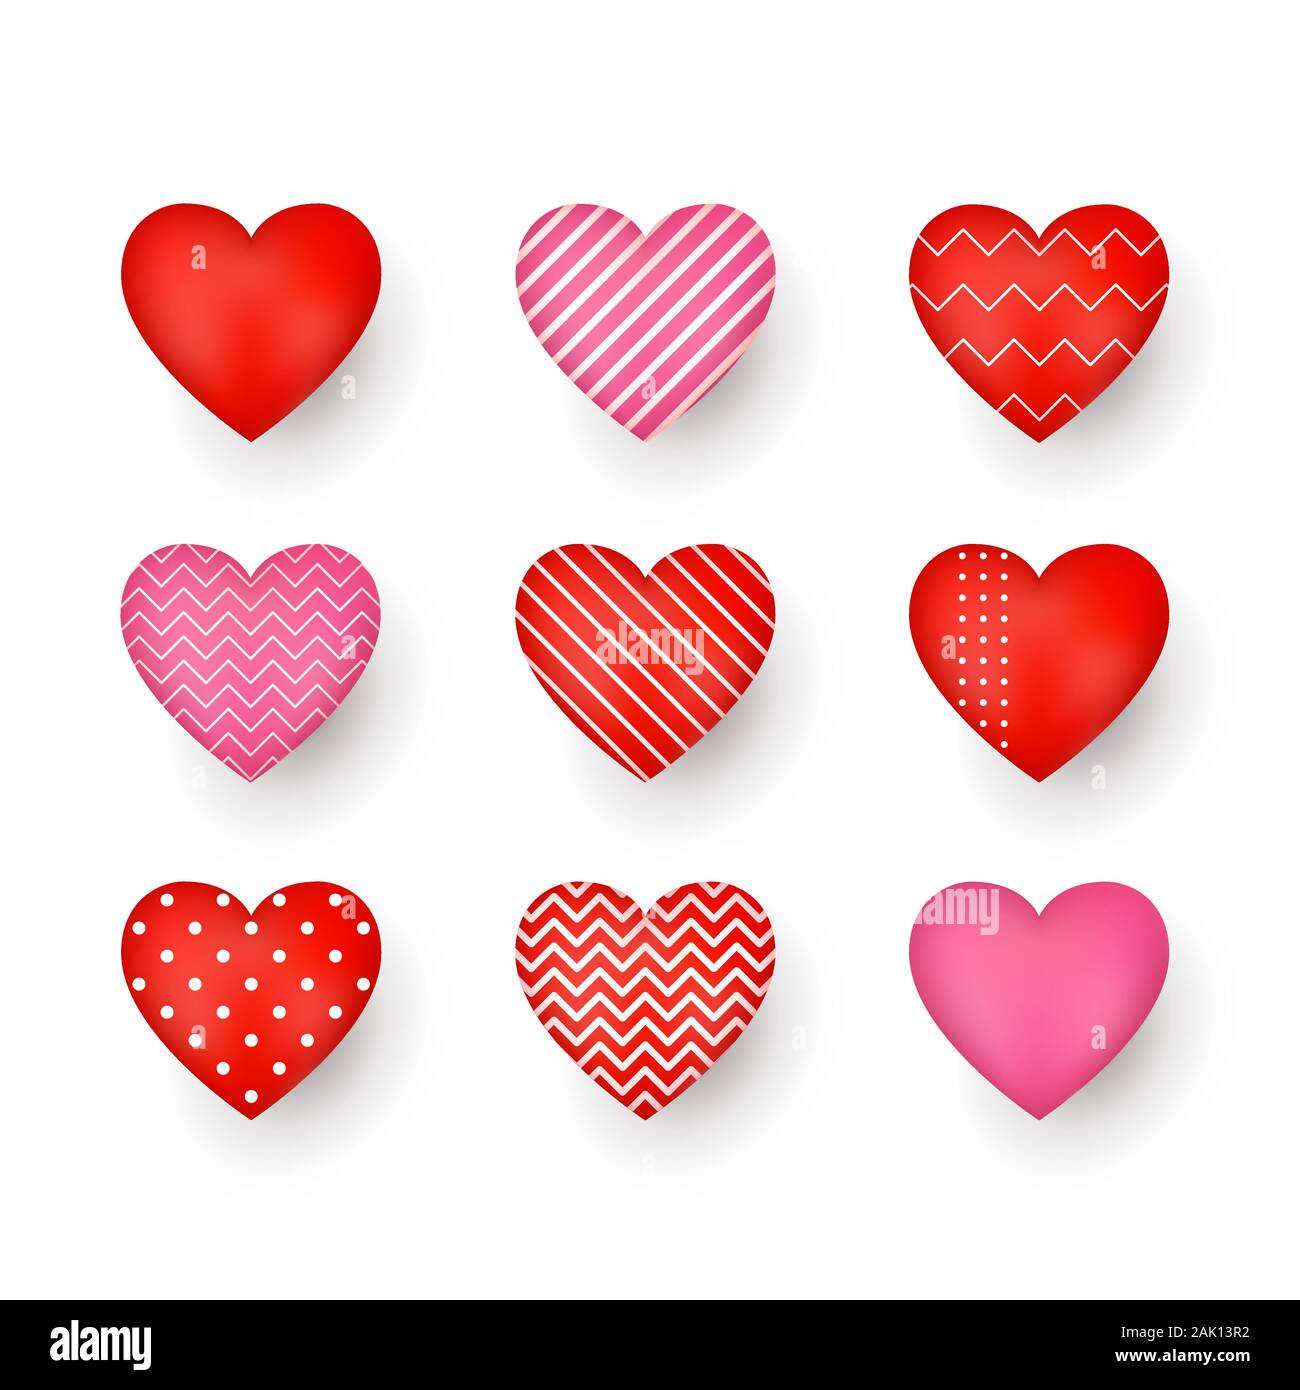 Rot und Pink dekorative Herzen mit Schatten. Abstrakte Dekorationselement. Stilisierte Herzen Sammlung für die Grußkarte oder anderen Vorlagen. Vecto Stock Vektor